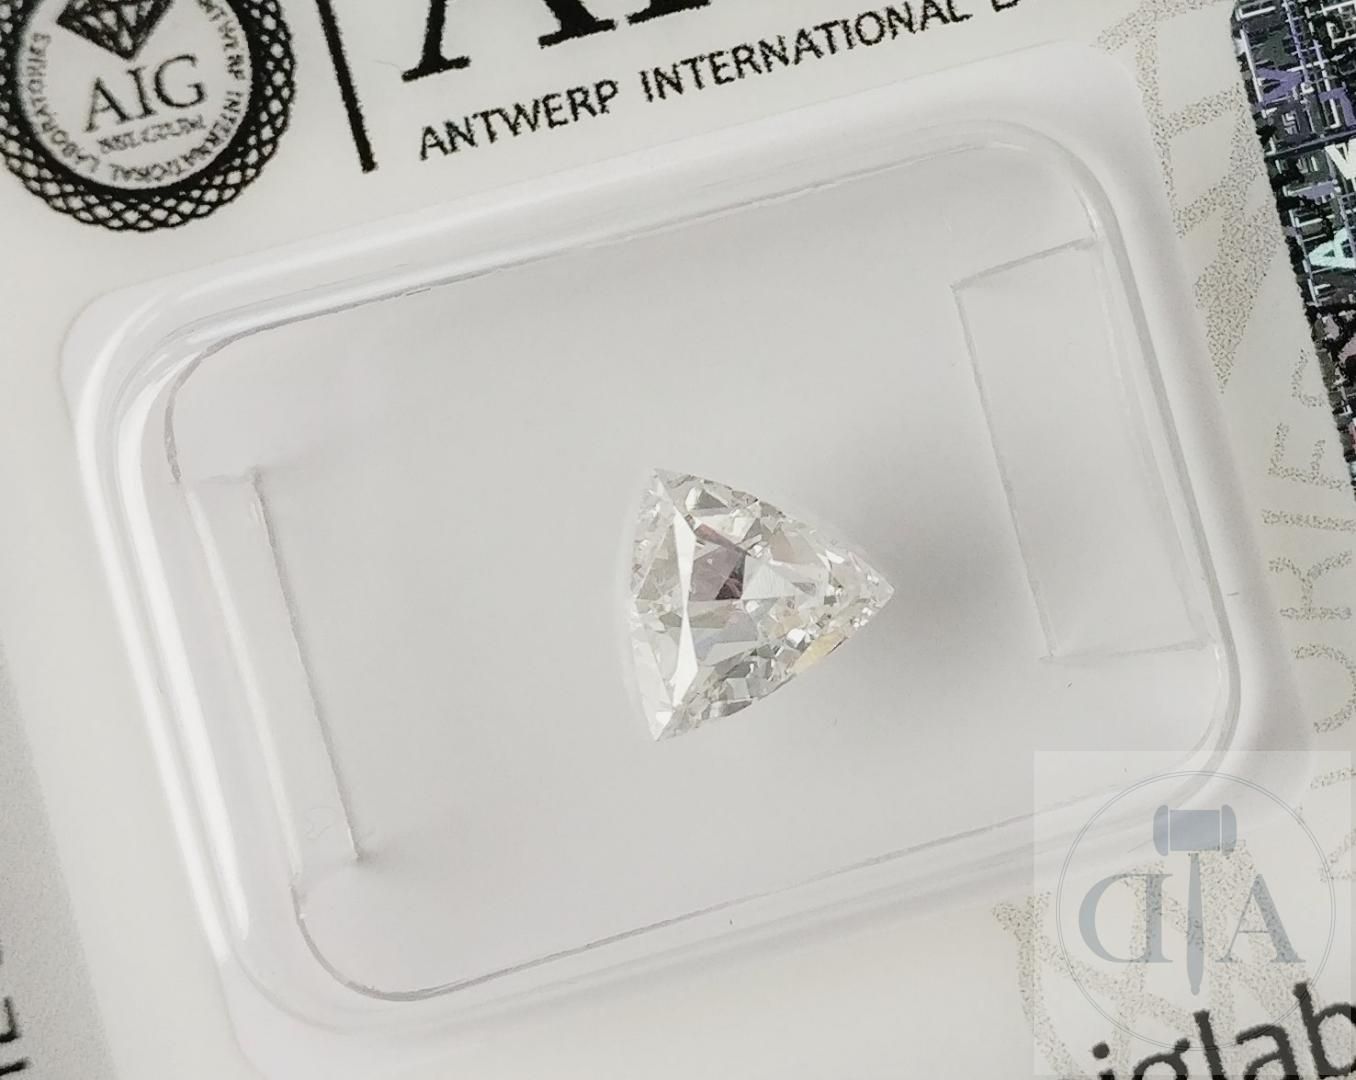 Null Diamante trillante 0,67 carati certificato AIG

- Certificato AIG n. 181000&hellip;